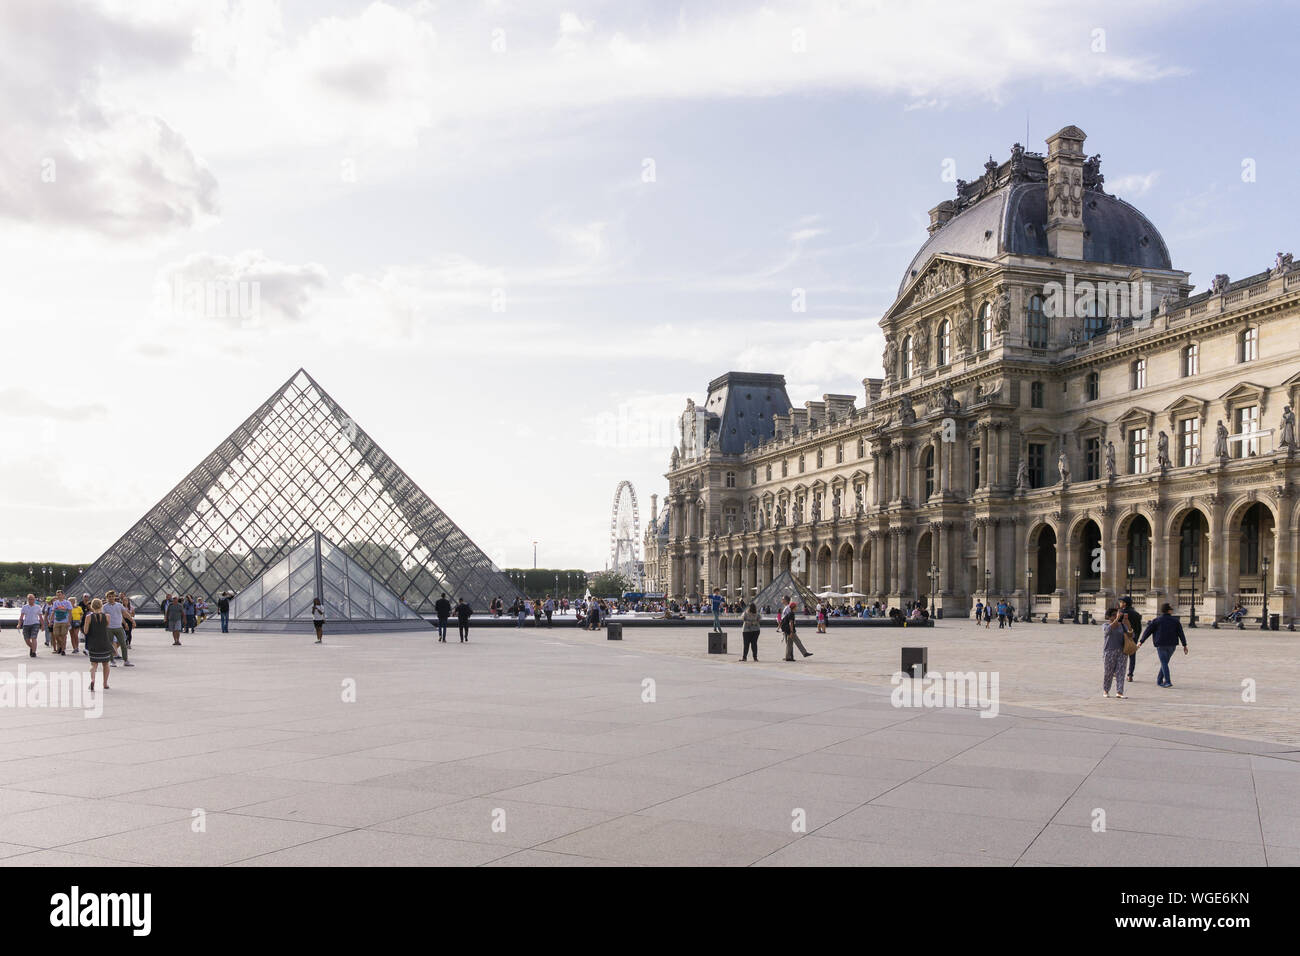 Paris Louvre - construction du musée du Louvre et d'une pyramide de verre à Paris, France, Europe. Banque D'Images